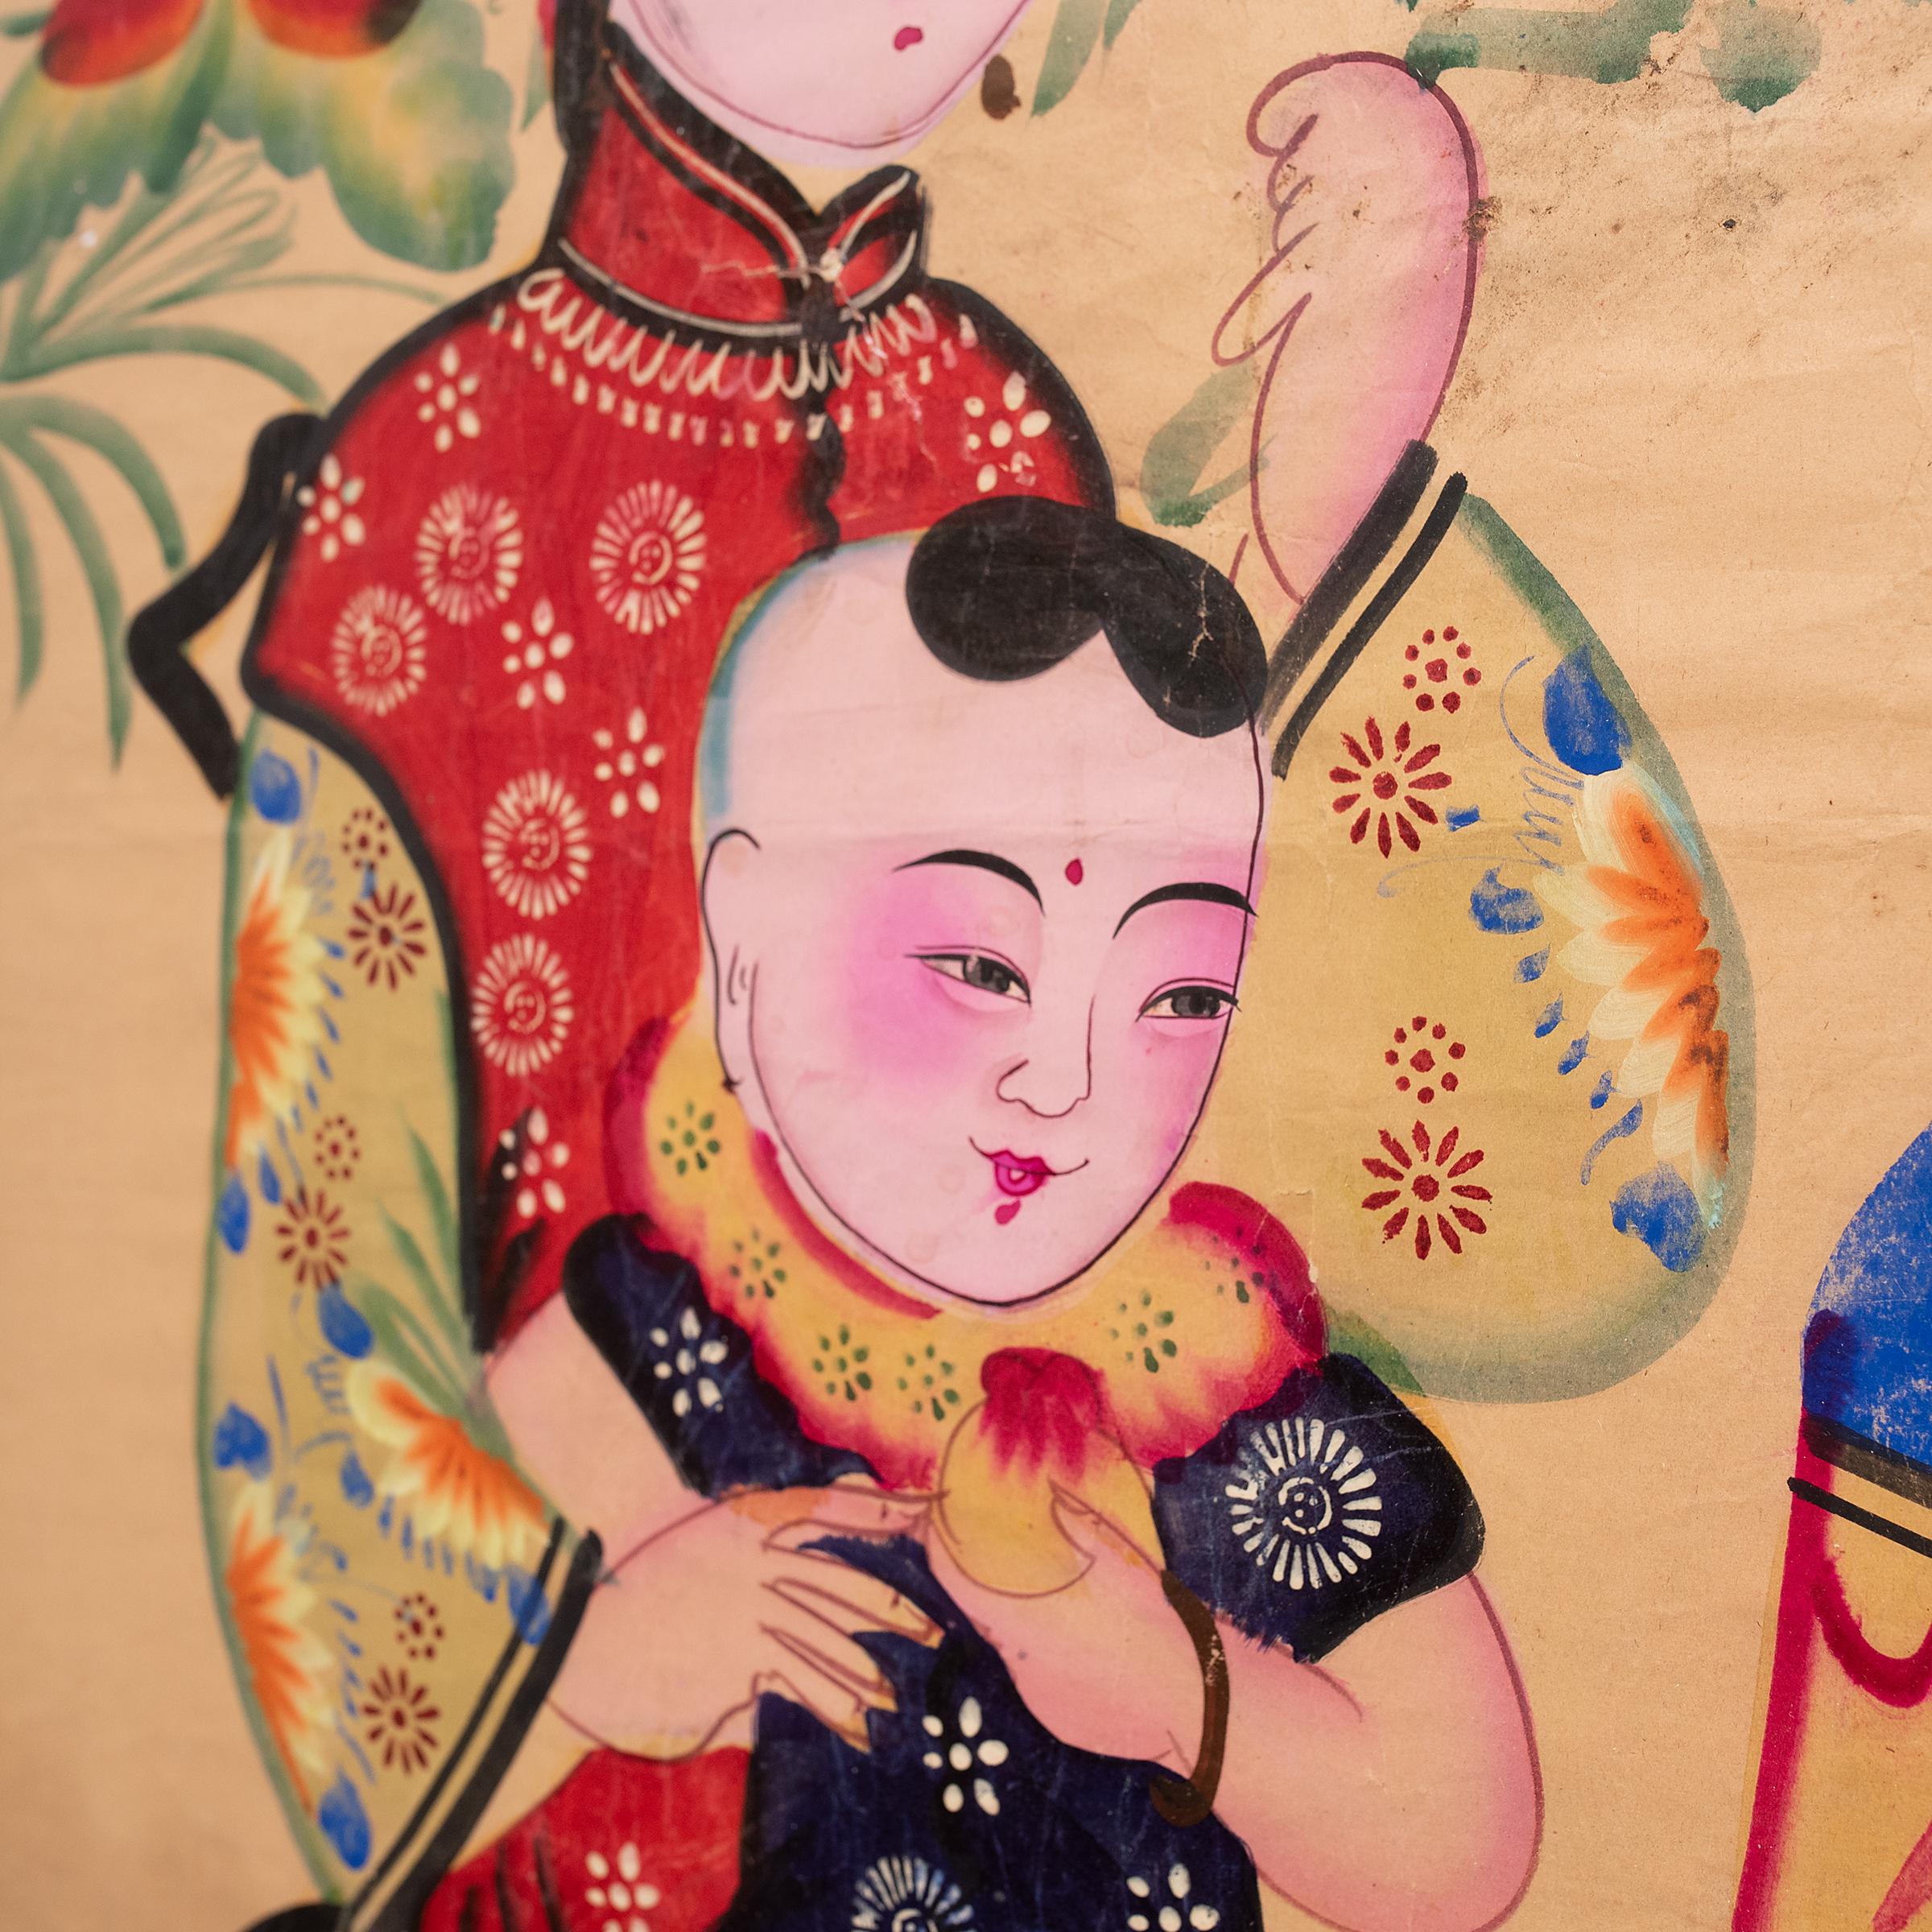 Chinesische Neujahrsgemälde (nian hua) sind farbenfrohe Volksgemälde, die zur Feier des jährlichen Frühlingsfestes geschaffen werden. Die von Volkskünstlern in regionalen Studios gezeichneten oder gedruckten Nian Hua-Gemälde zeichnen sich durch